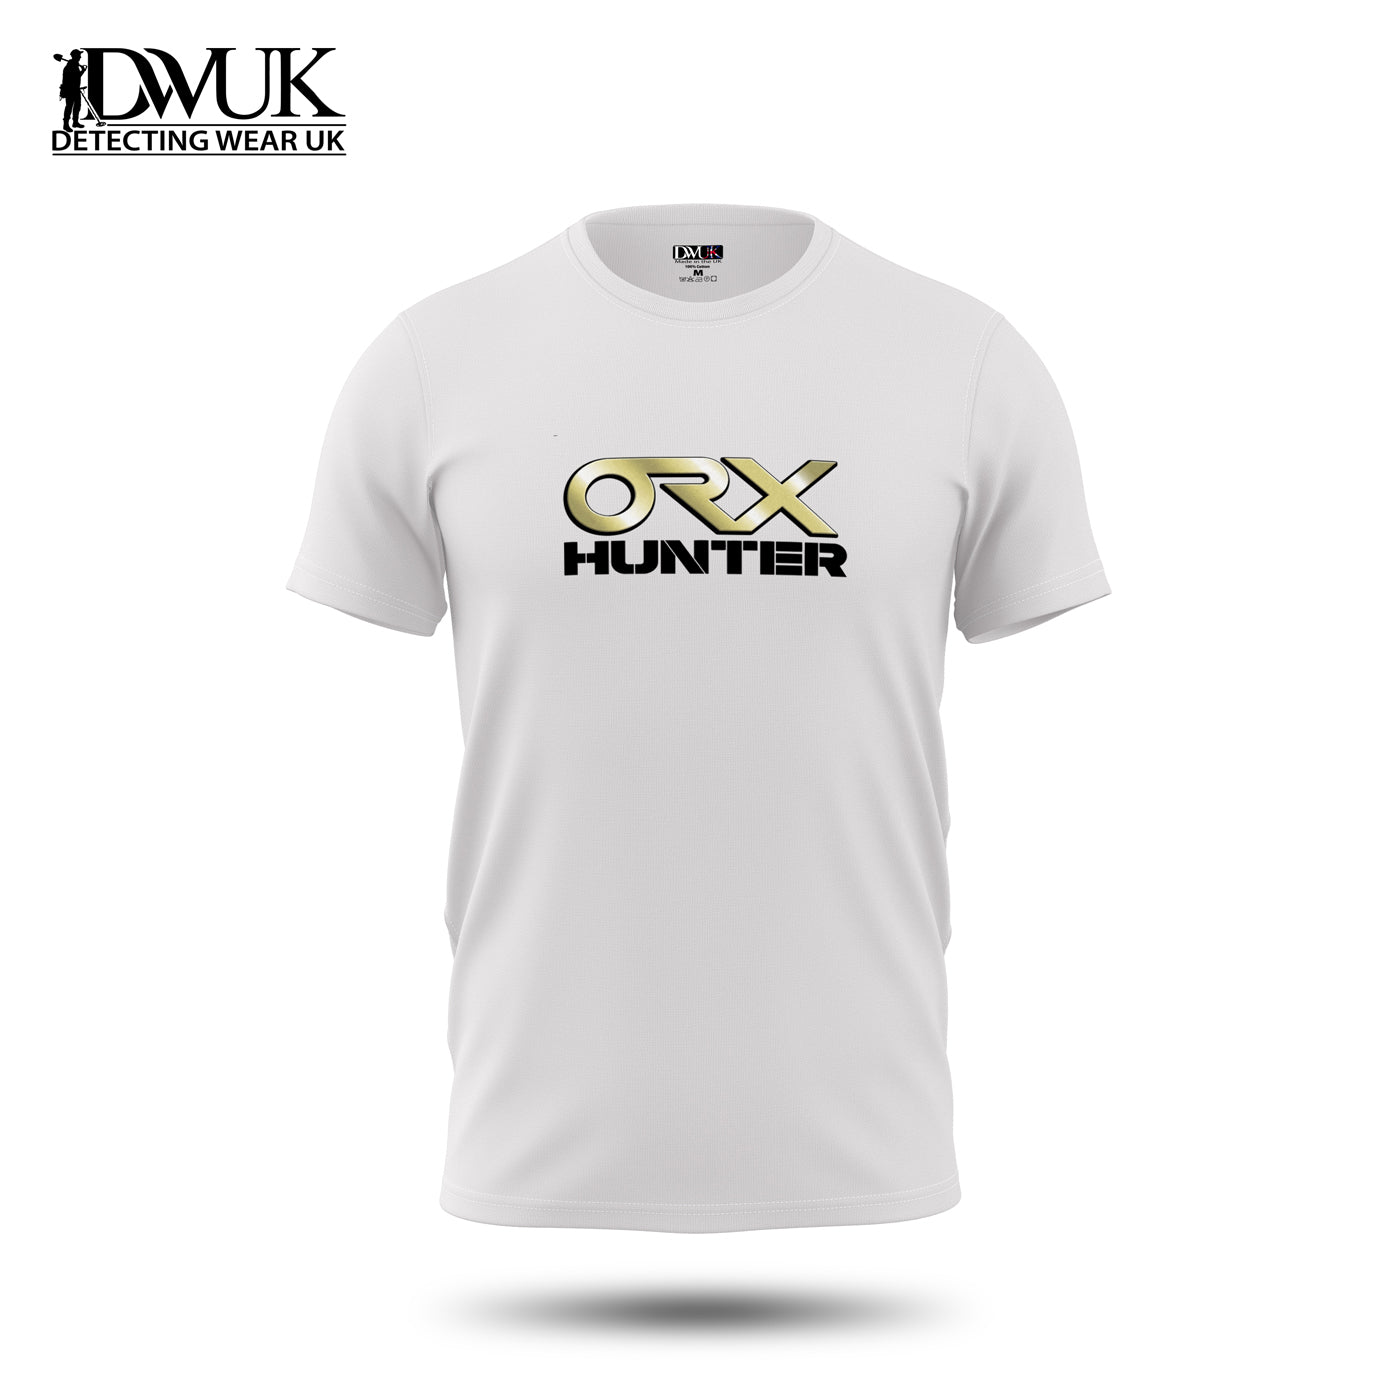 ORX Hunter T-Shirt